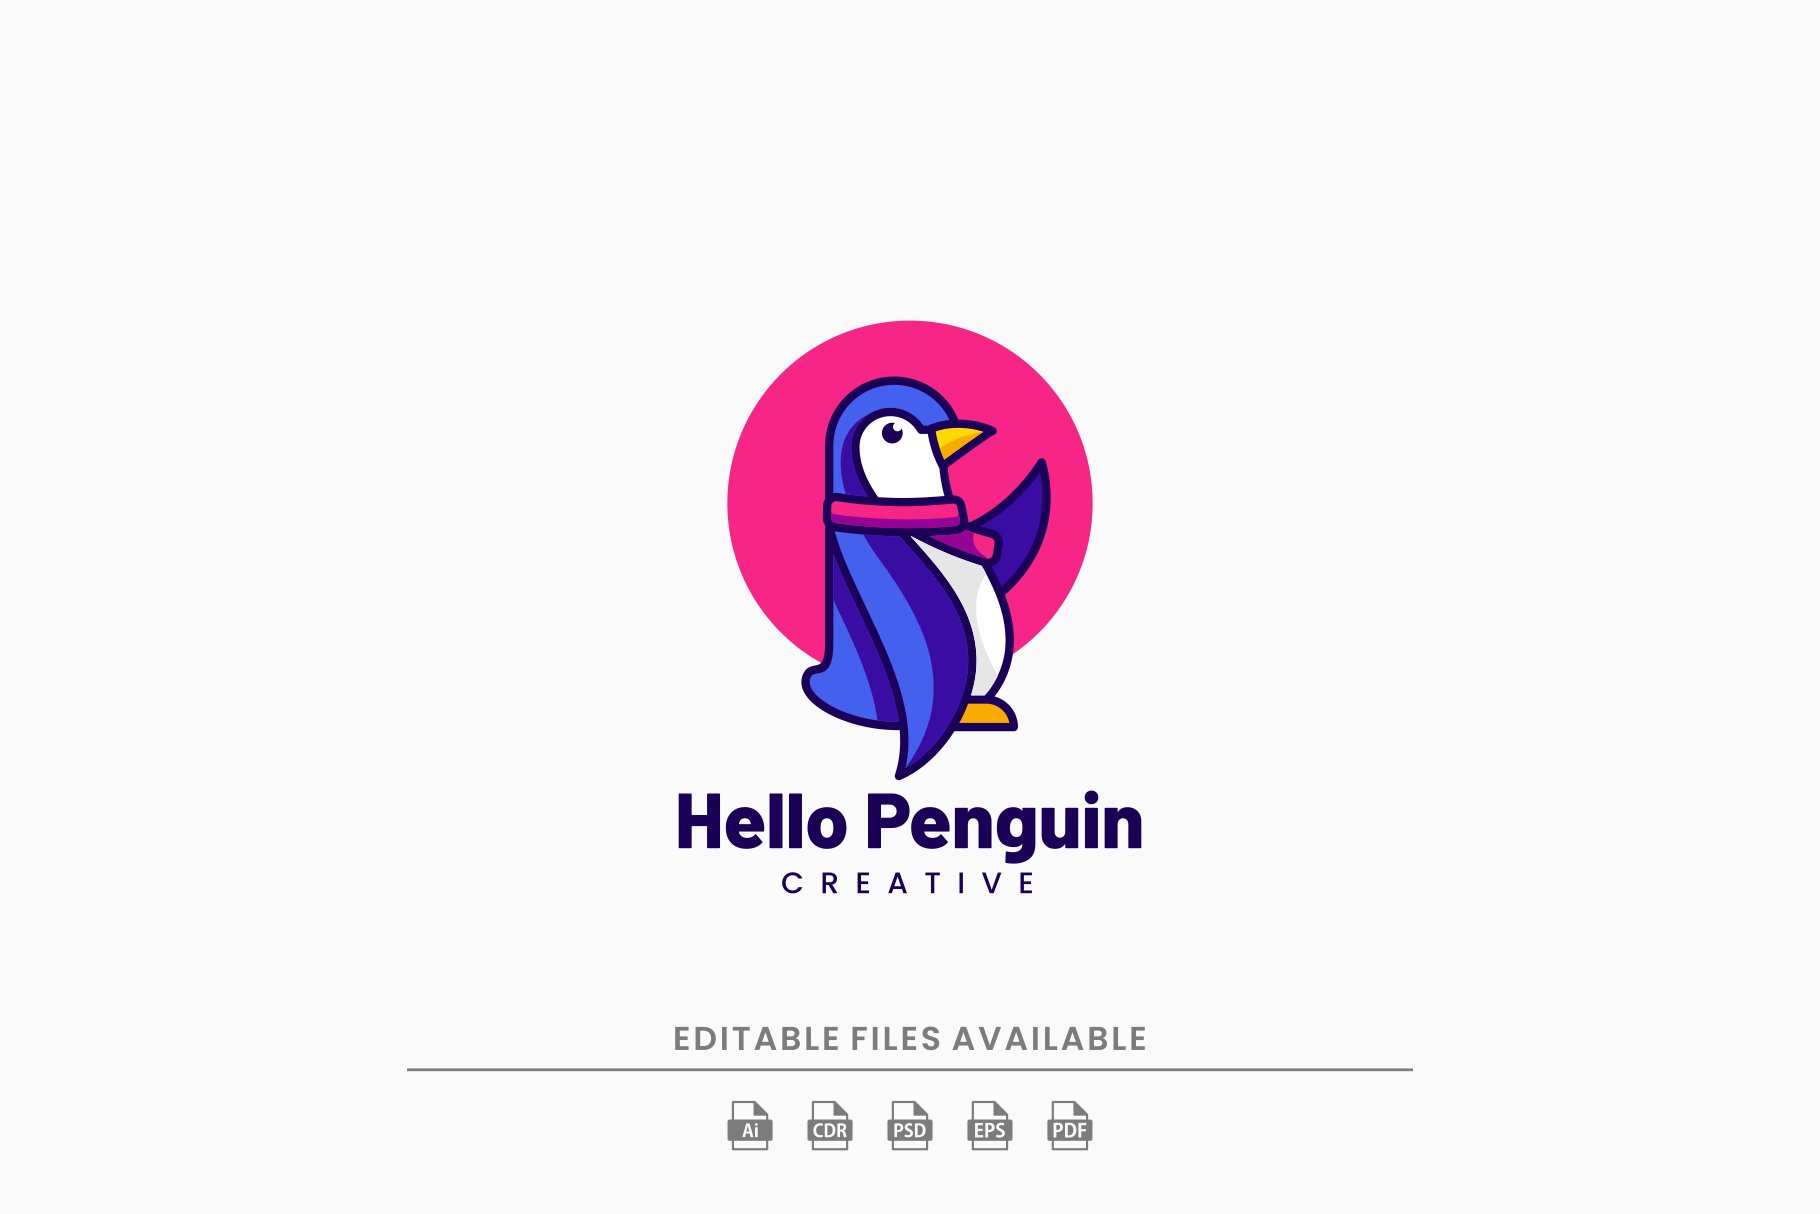 Hello Penguin Cartoon Logo cover image.